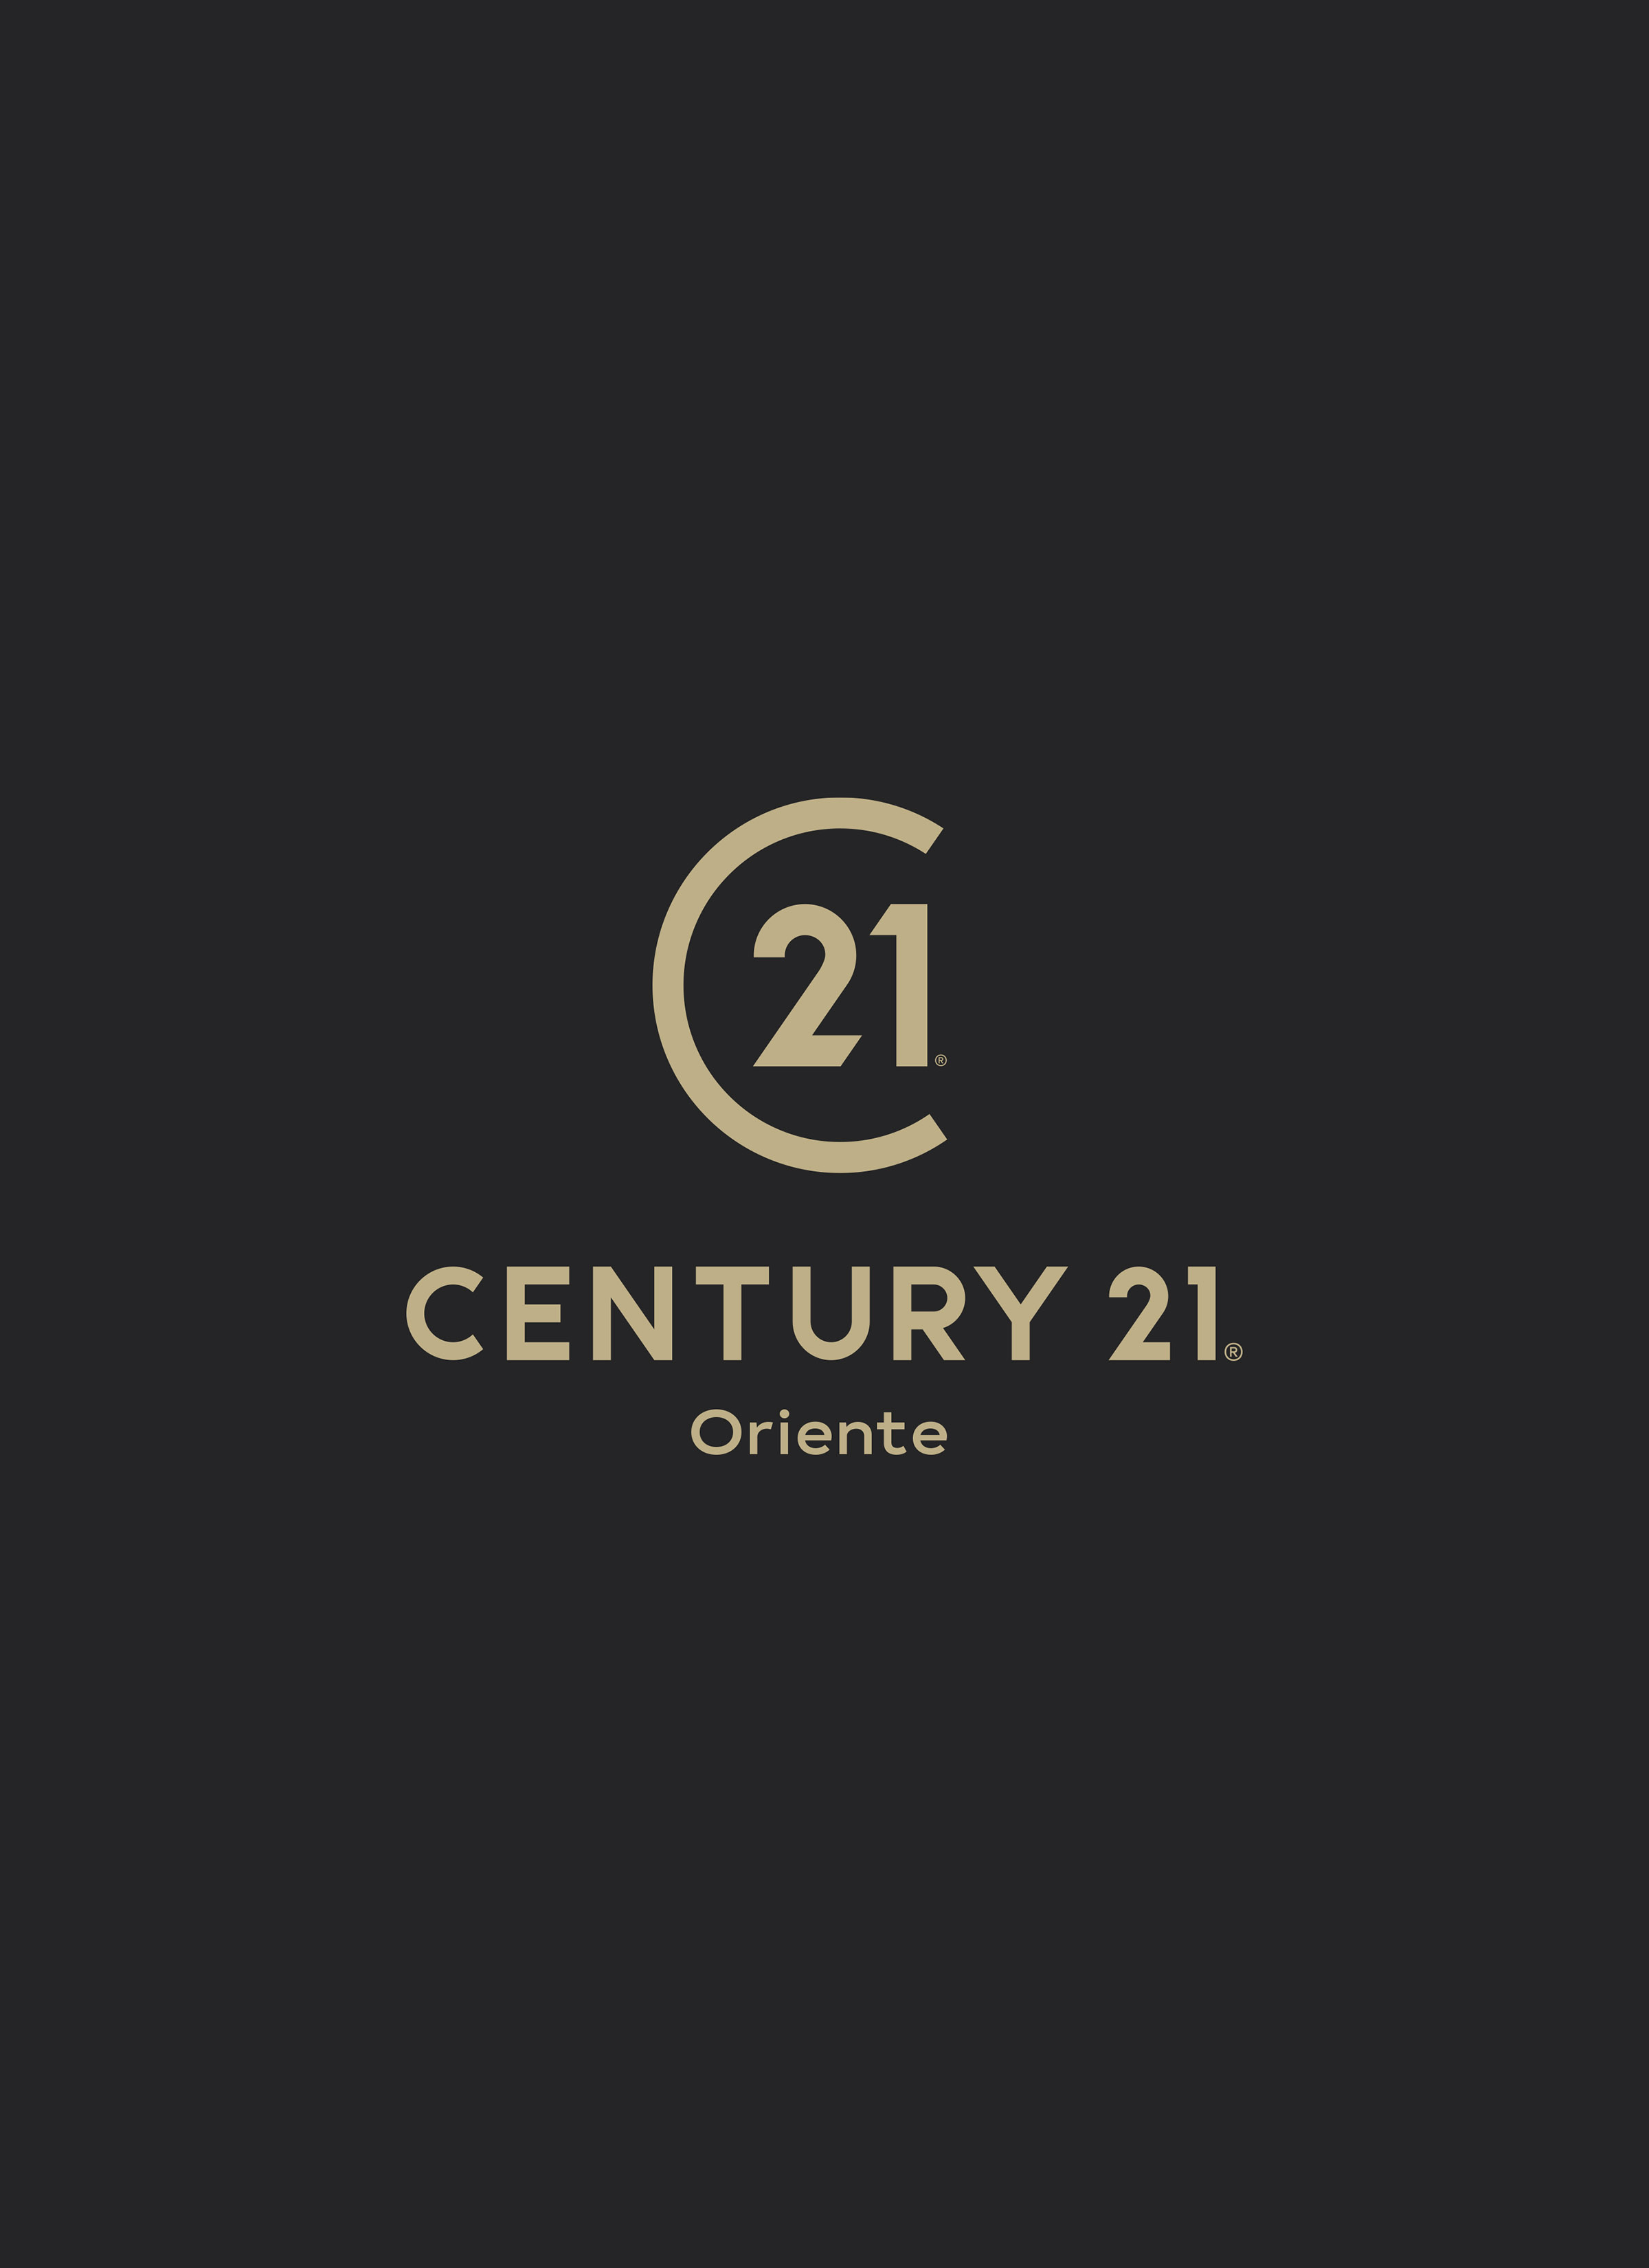 Century 21 Oriente